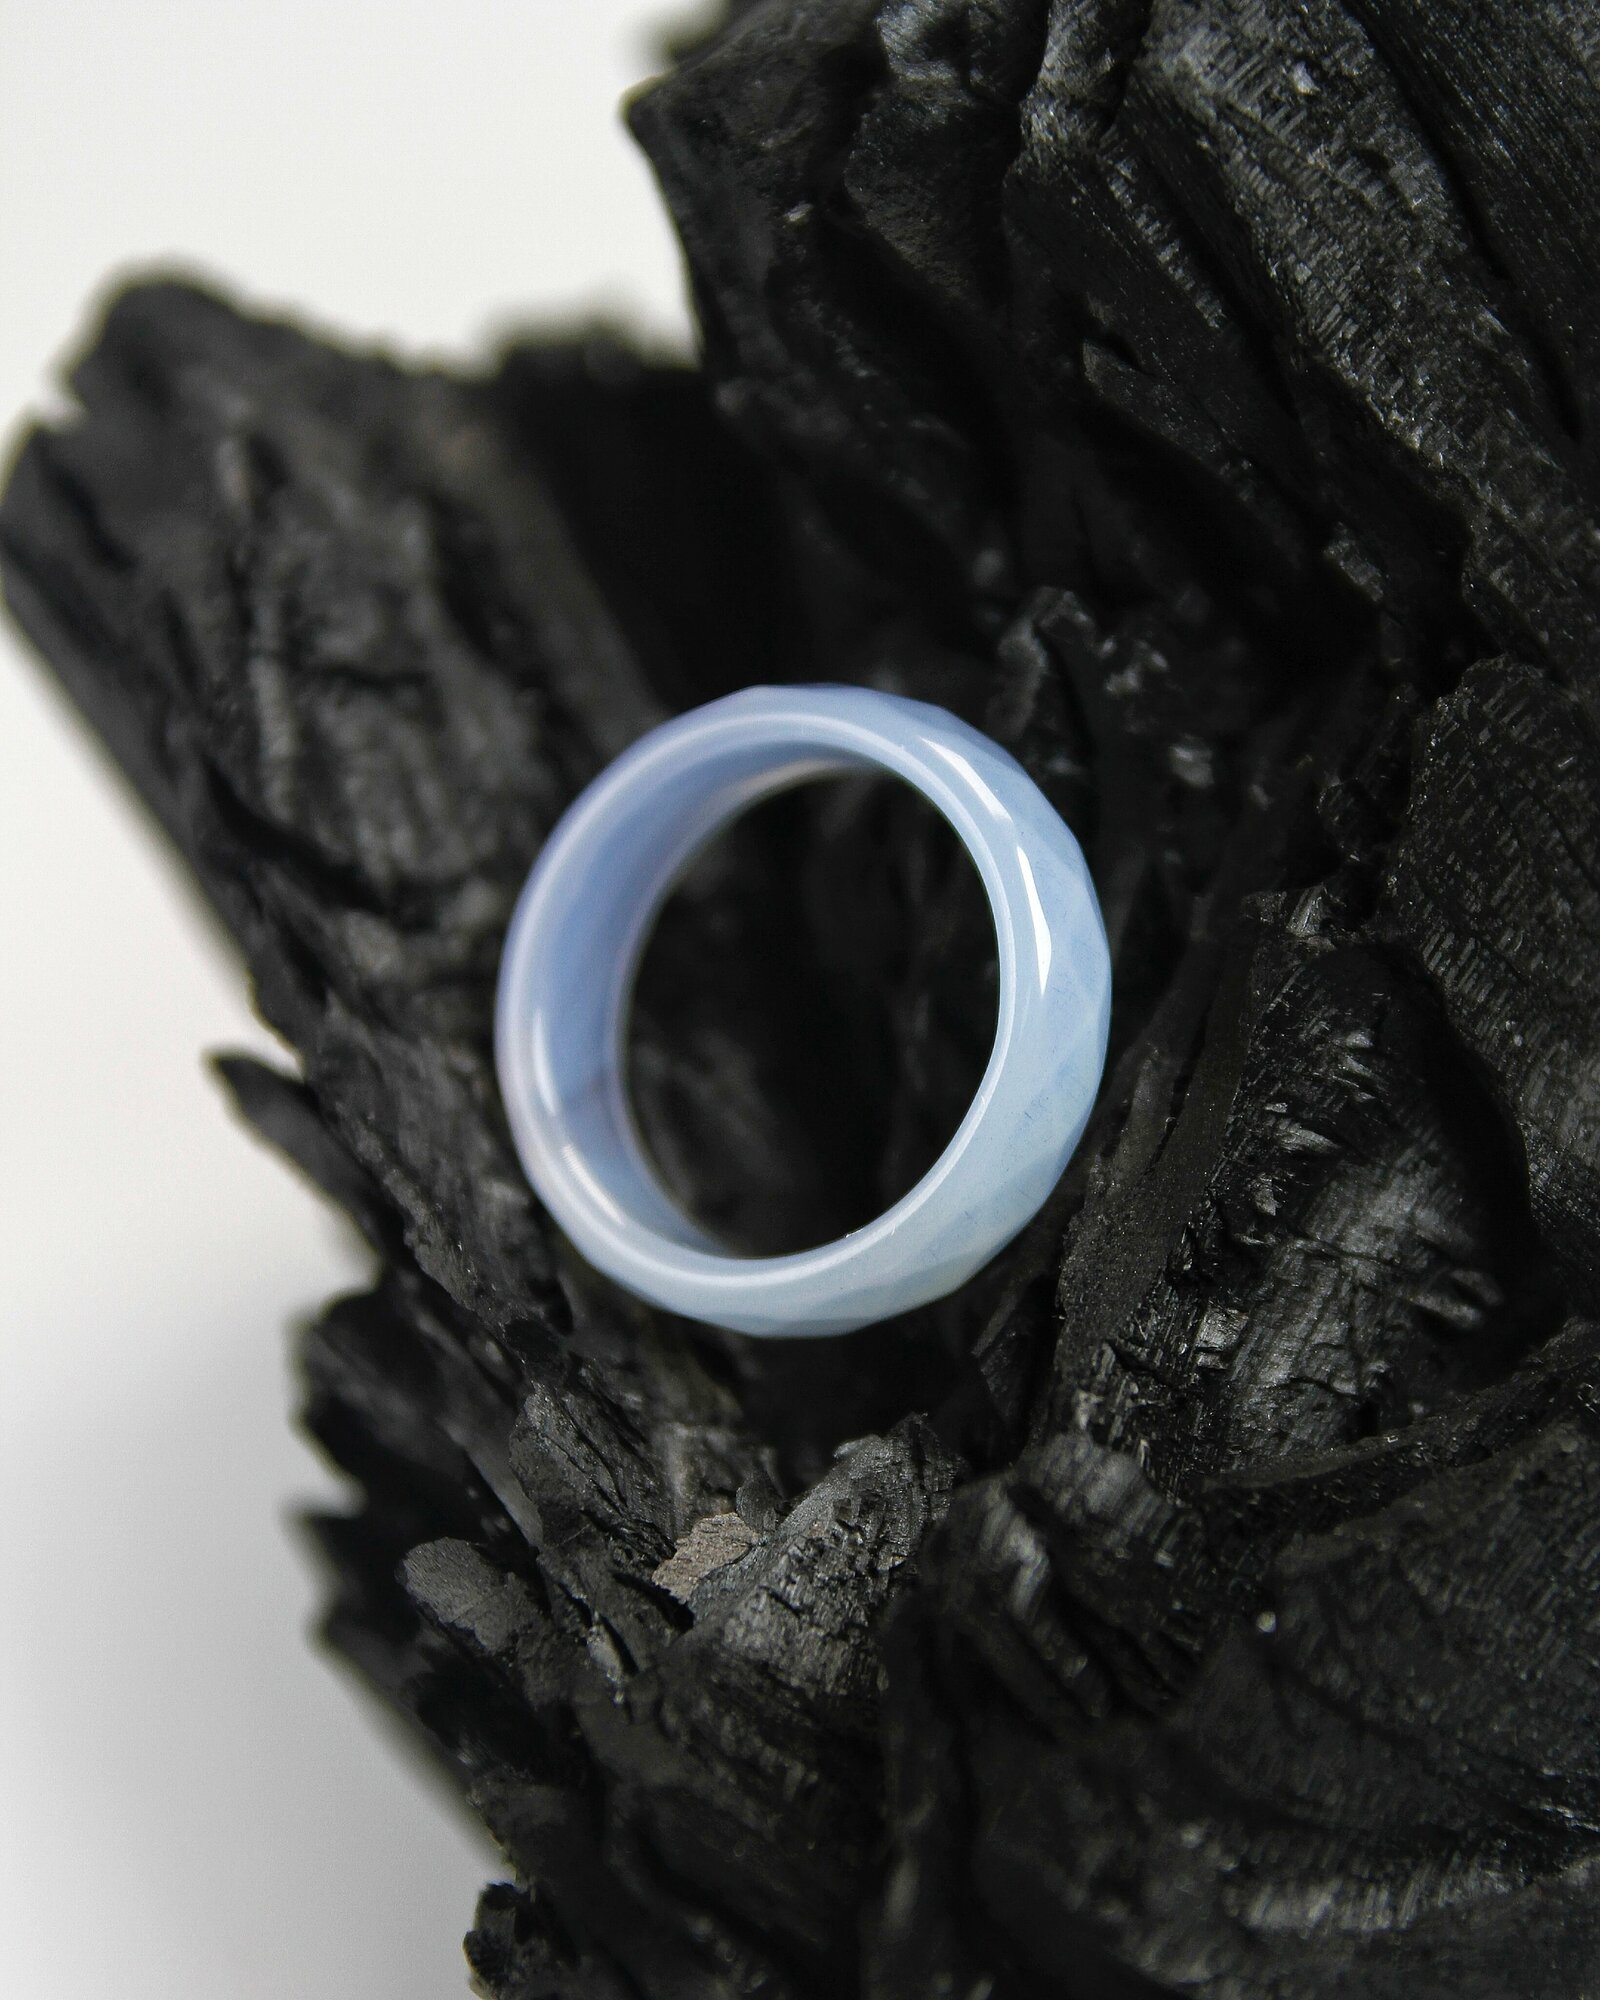 Кольцо-кулон Grow Up Кольцо из натурального камня Голубой агат, граненое, для душевного равновесия, размер 17-18, агат